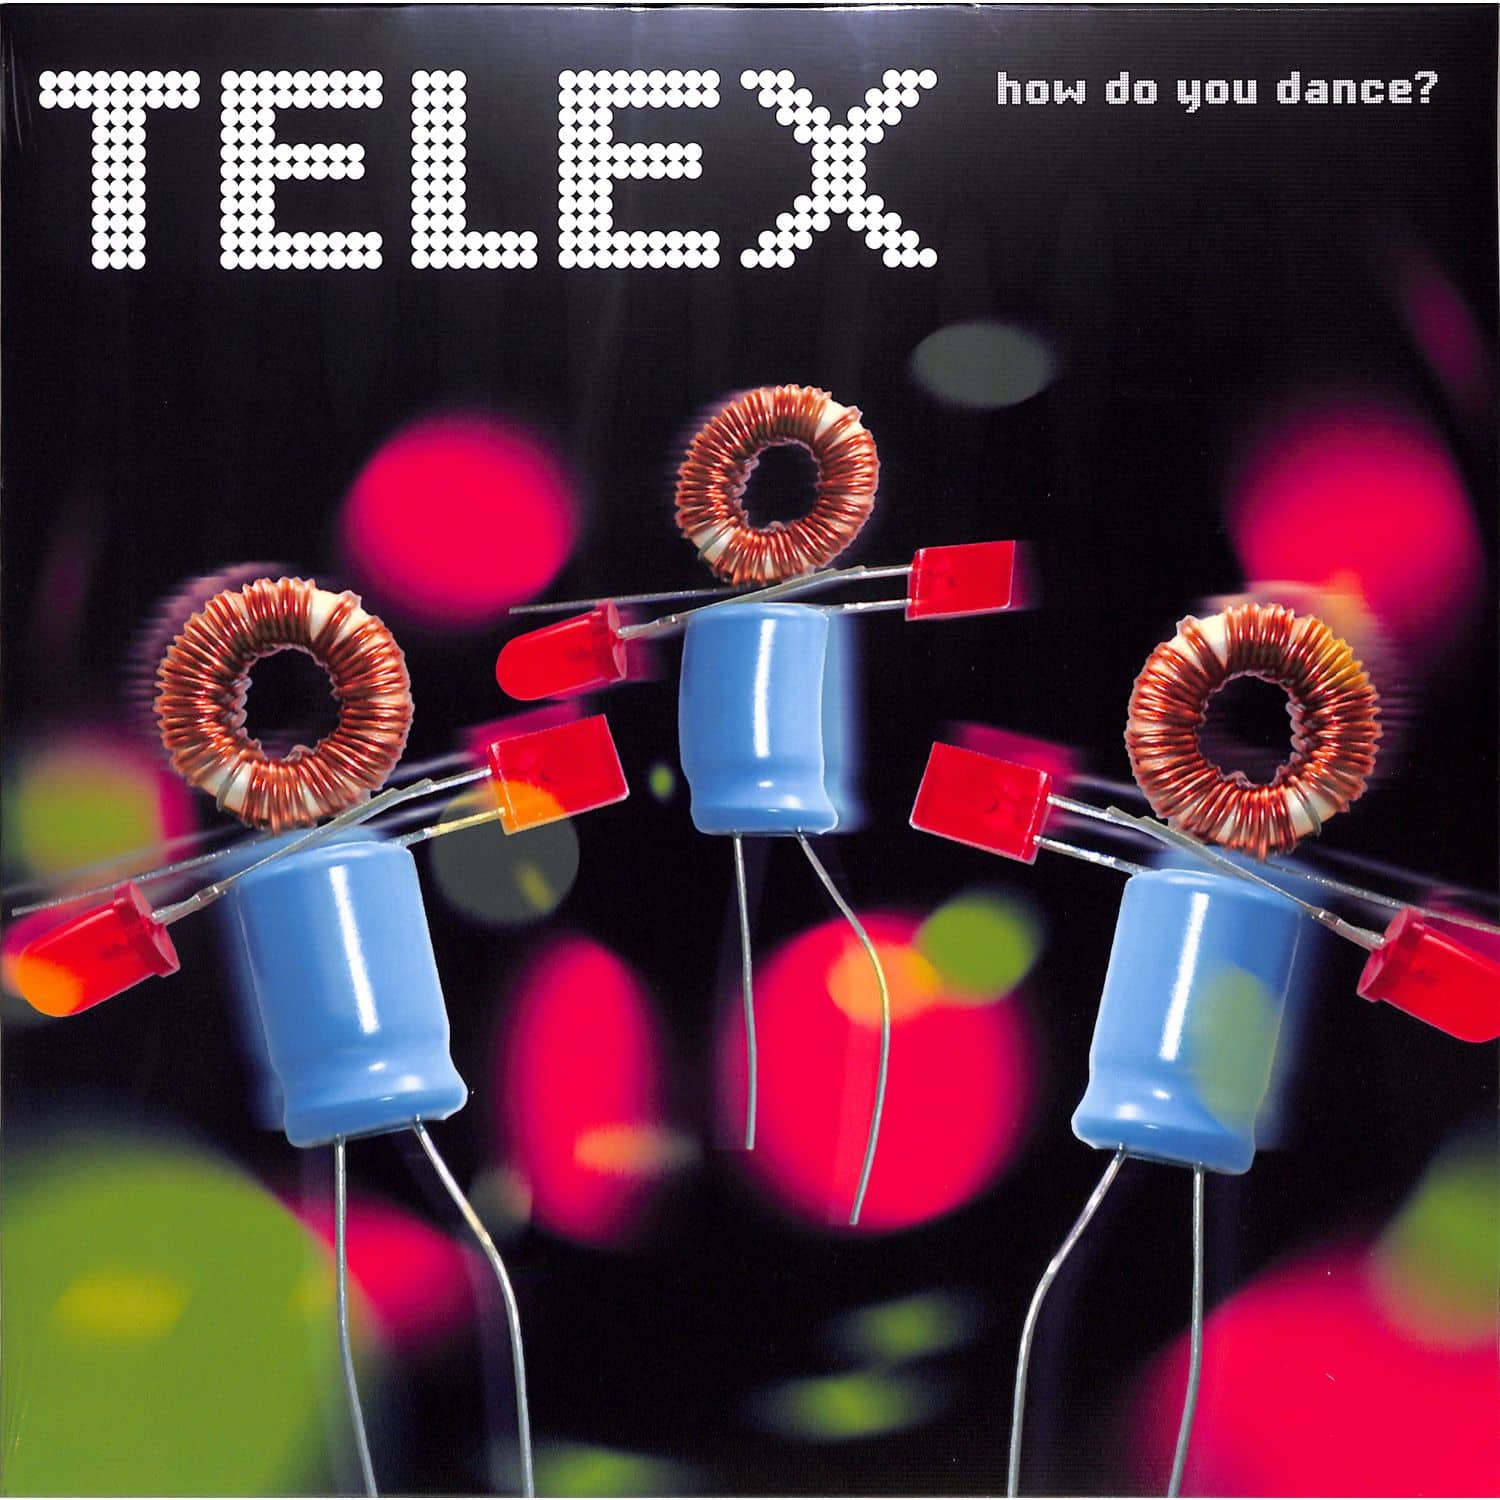 Telex - HOW DO YOU DANCE? 